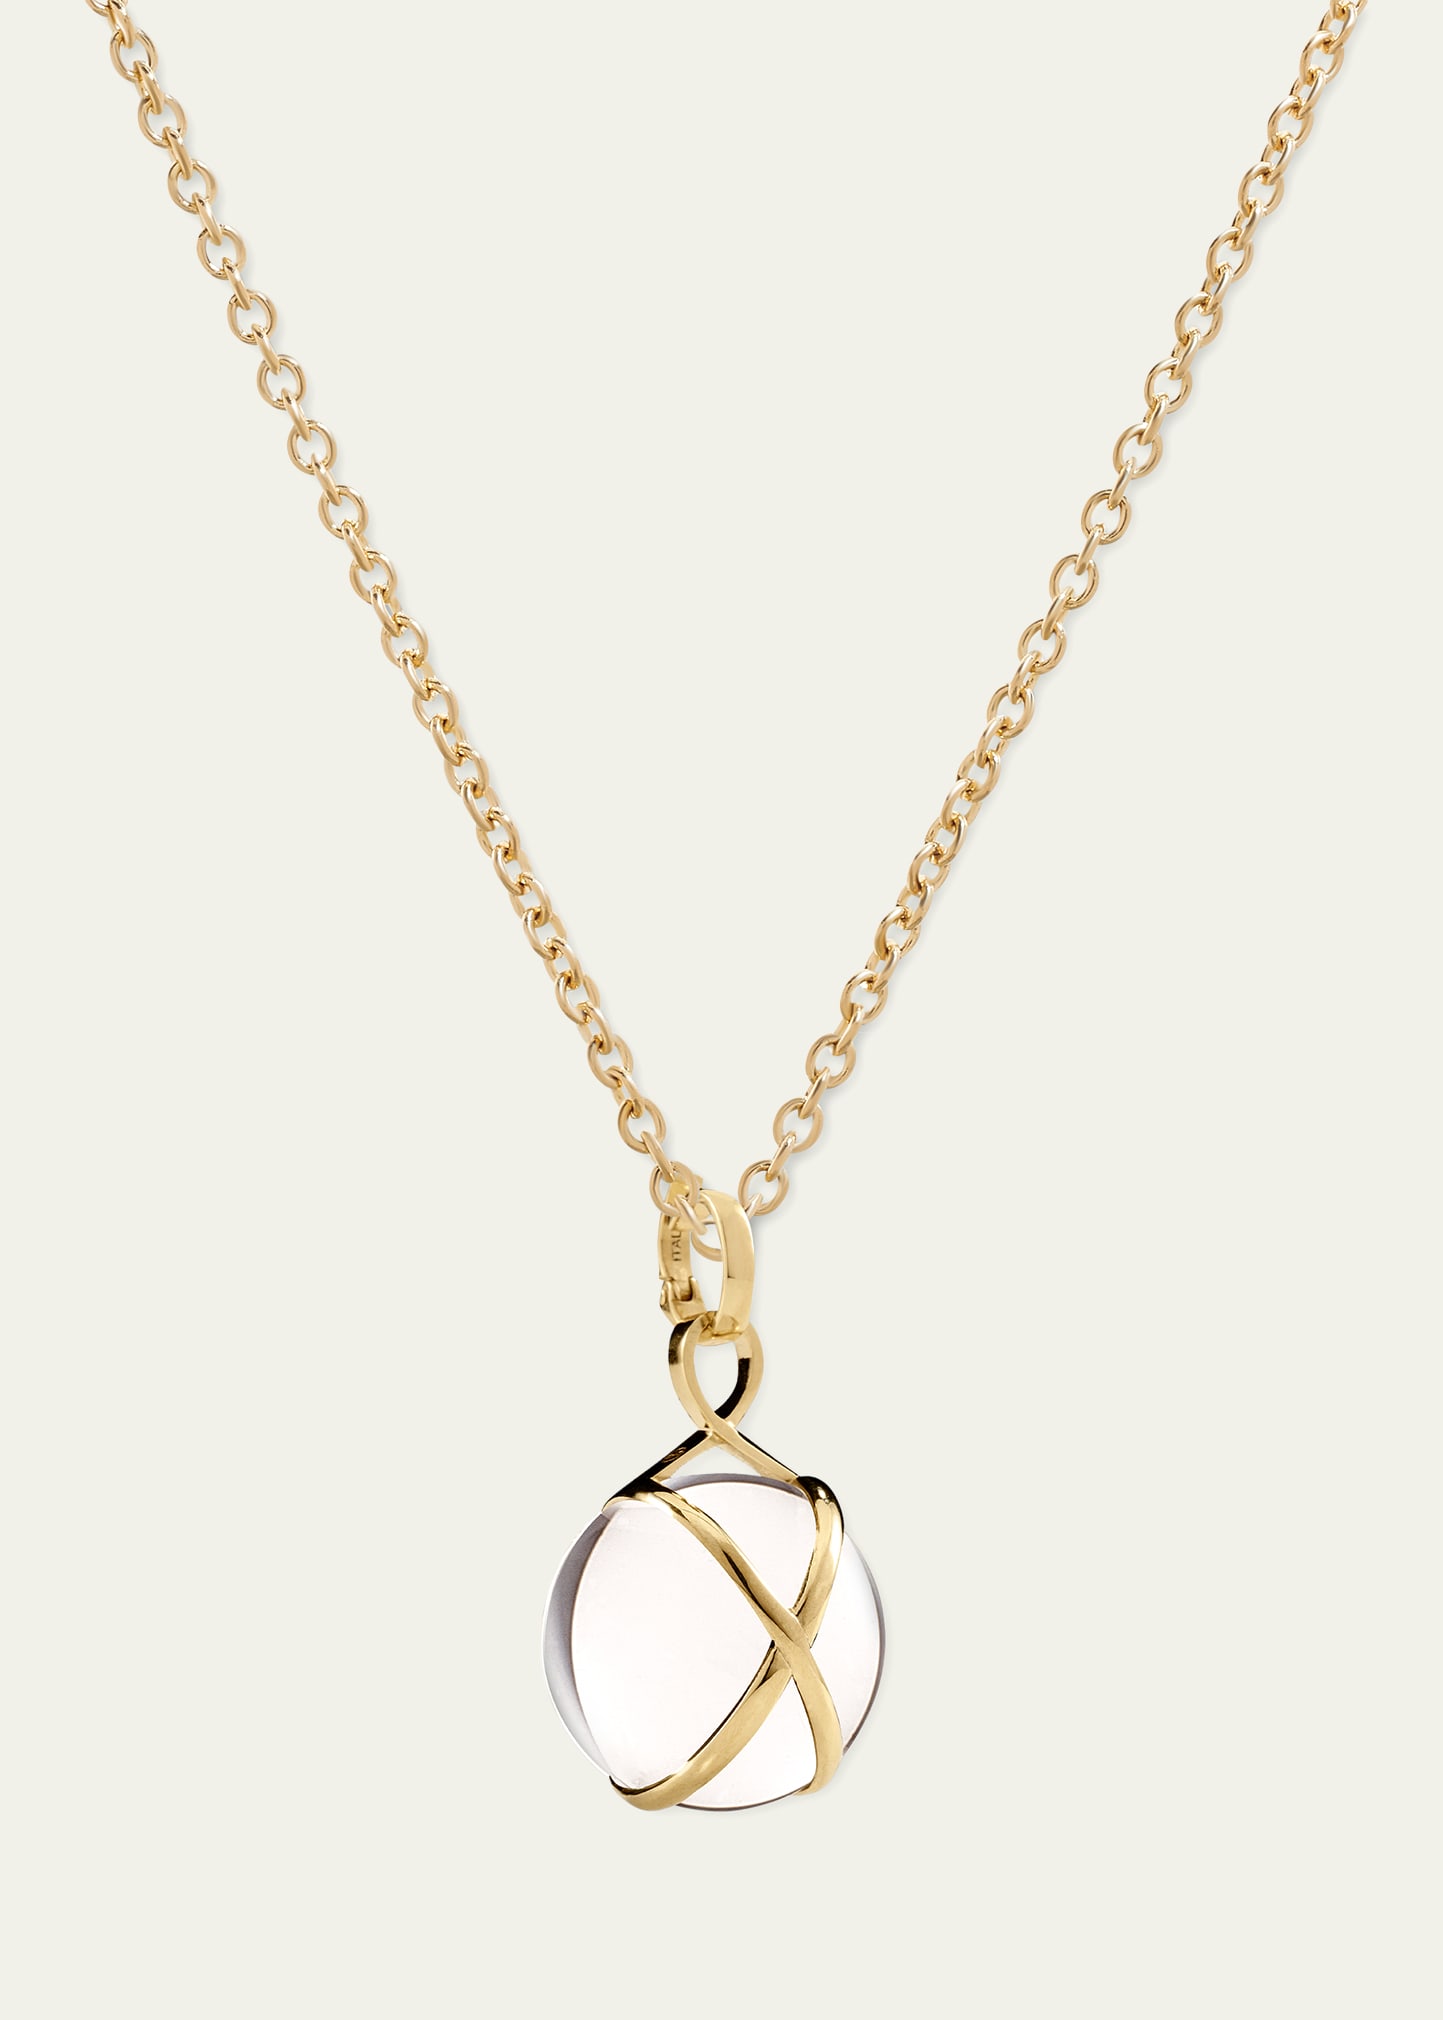 Prisma 18k Gold & Crystal Quartz Medium Pendant Classic Chain Necklace